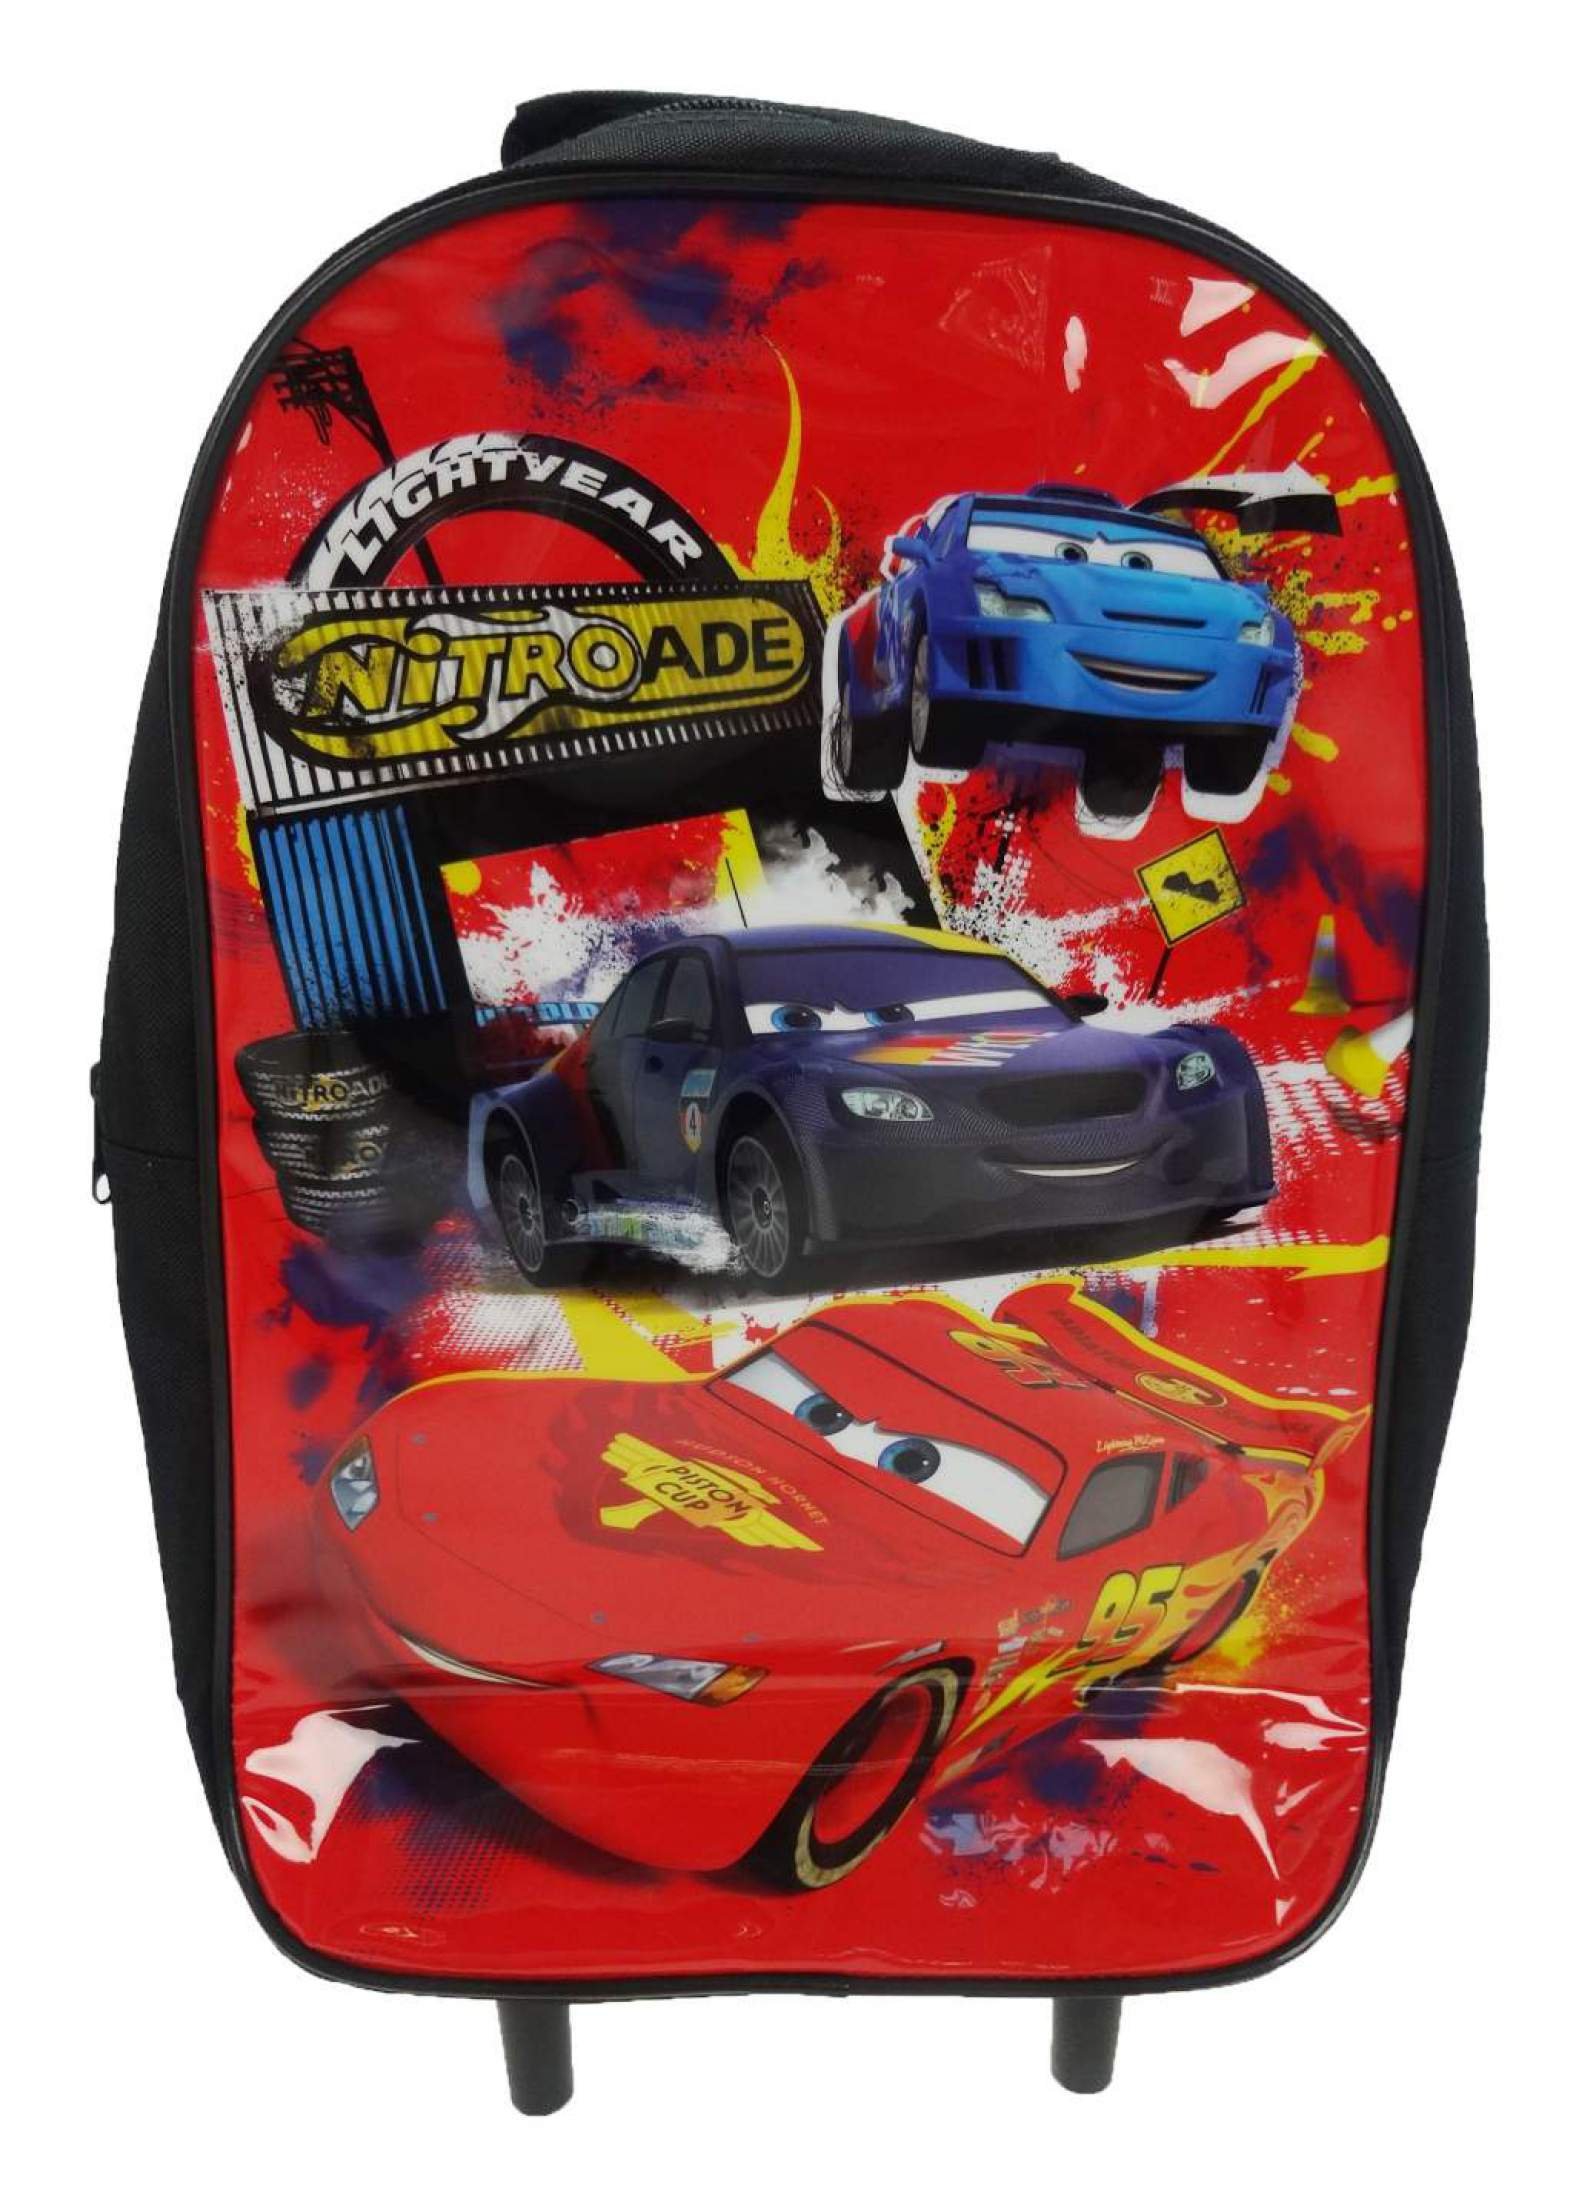 Disney Cars 'Nitroade' Street X School Travel Trolley Roller Wheeled Bag